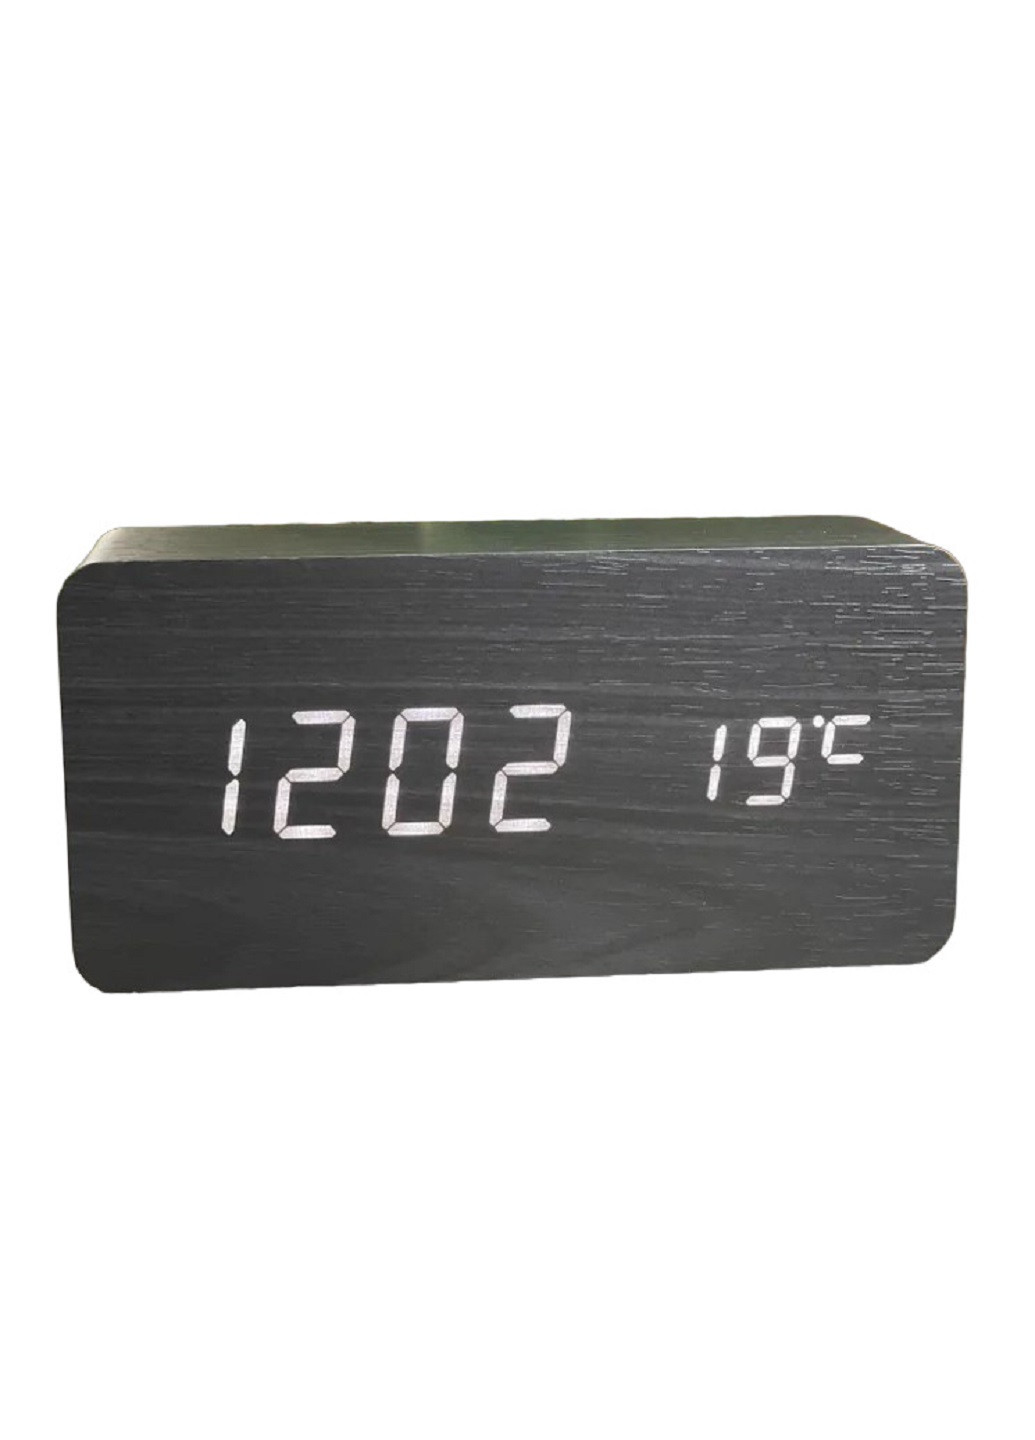 Часы настольные с термометром VST-862 Черный корпус Белая подсветка VTech (276534222)